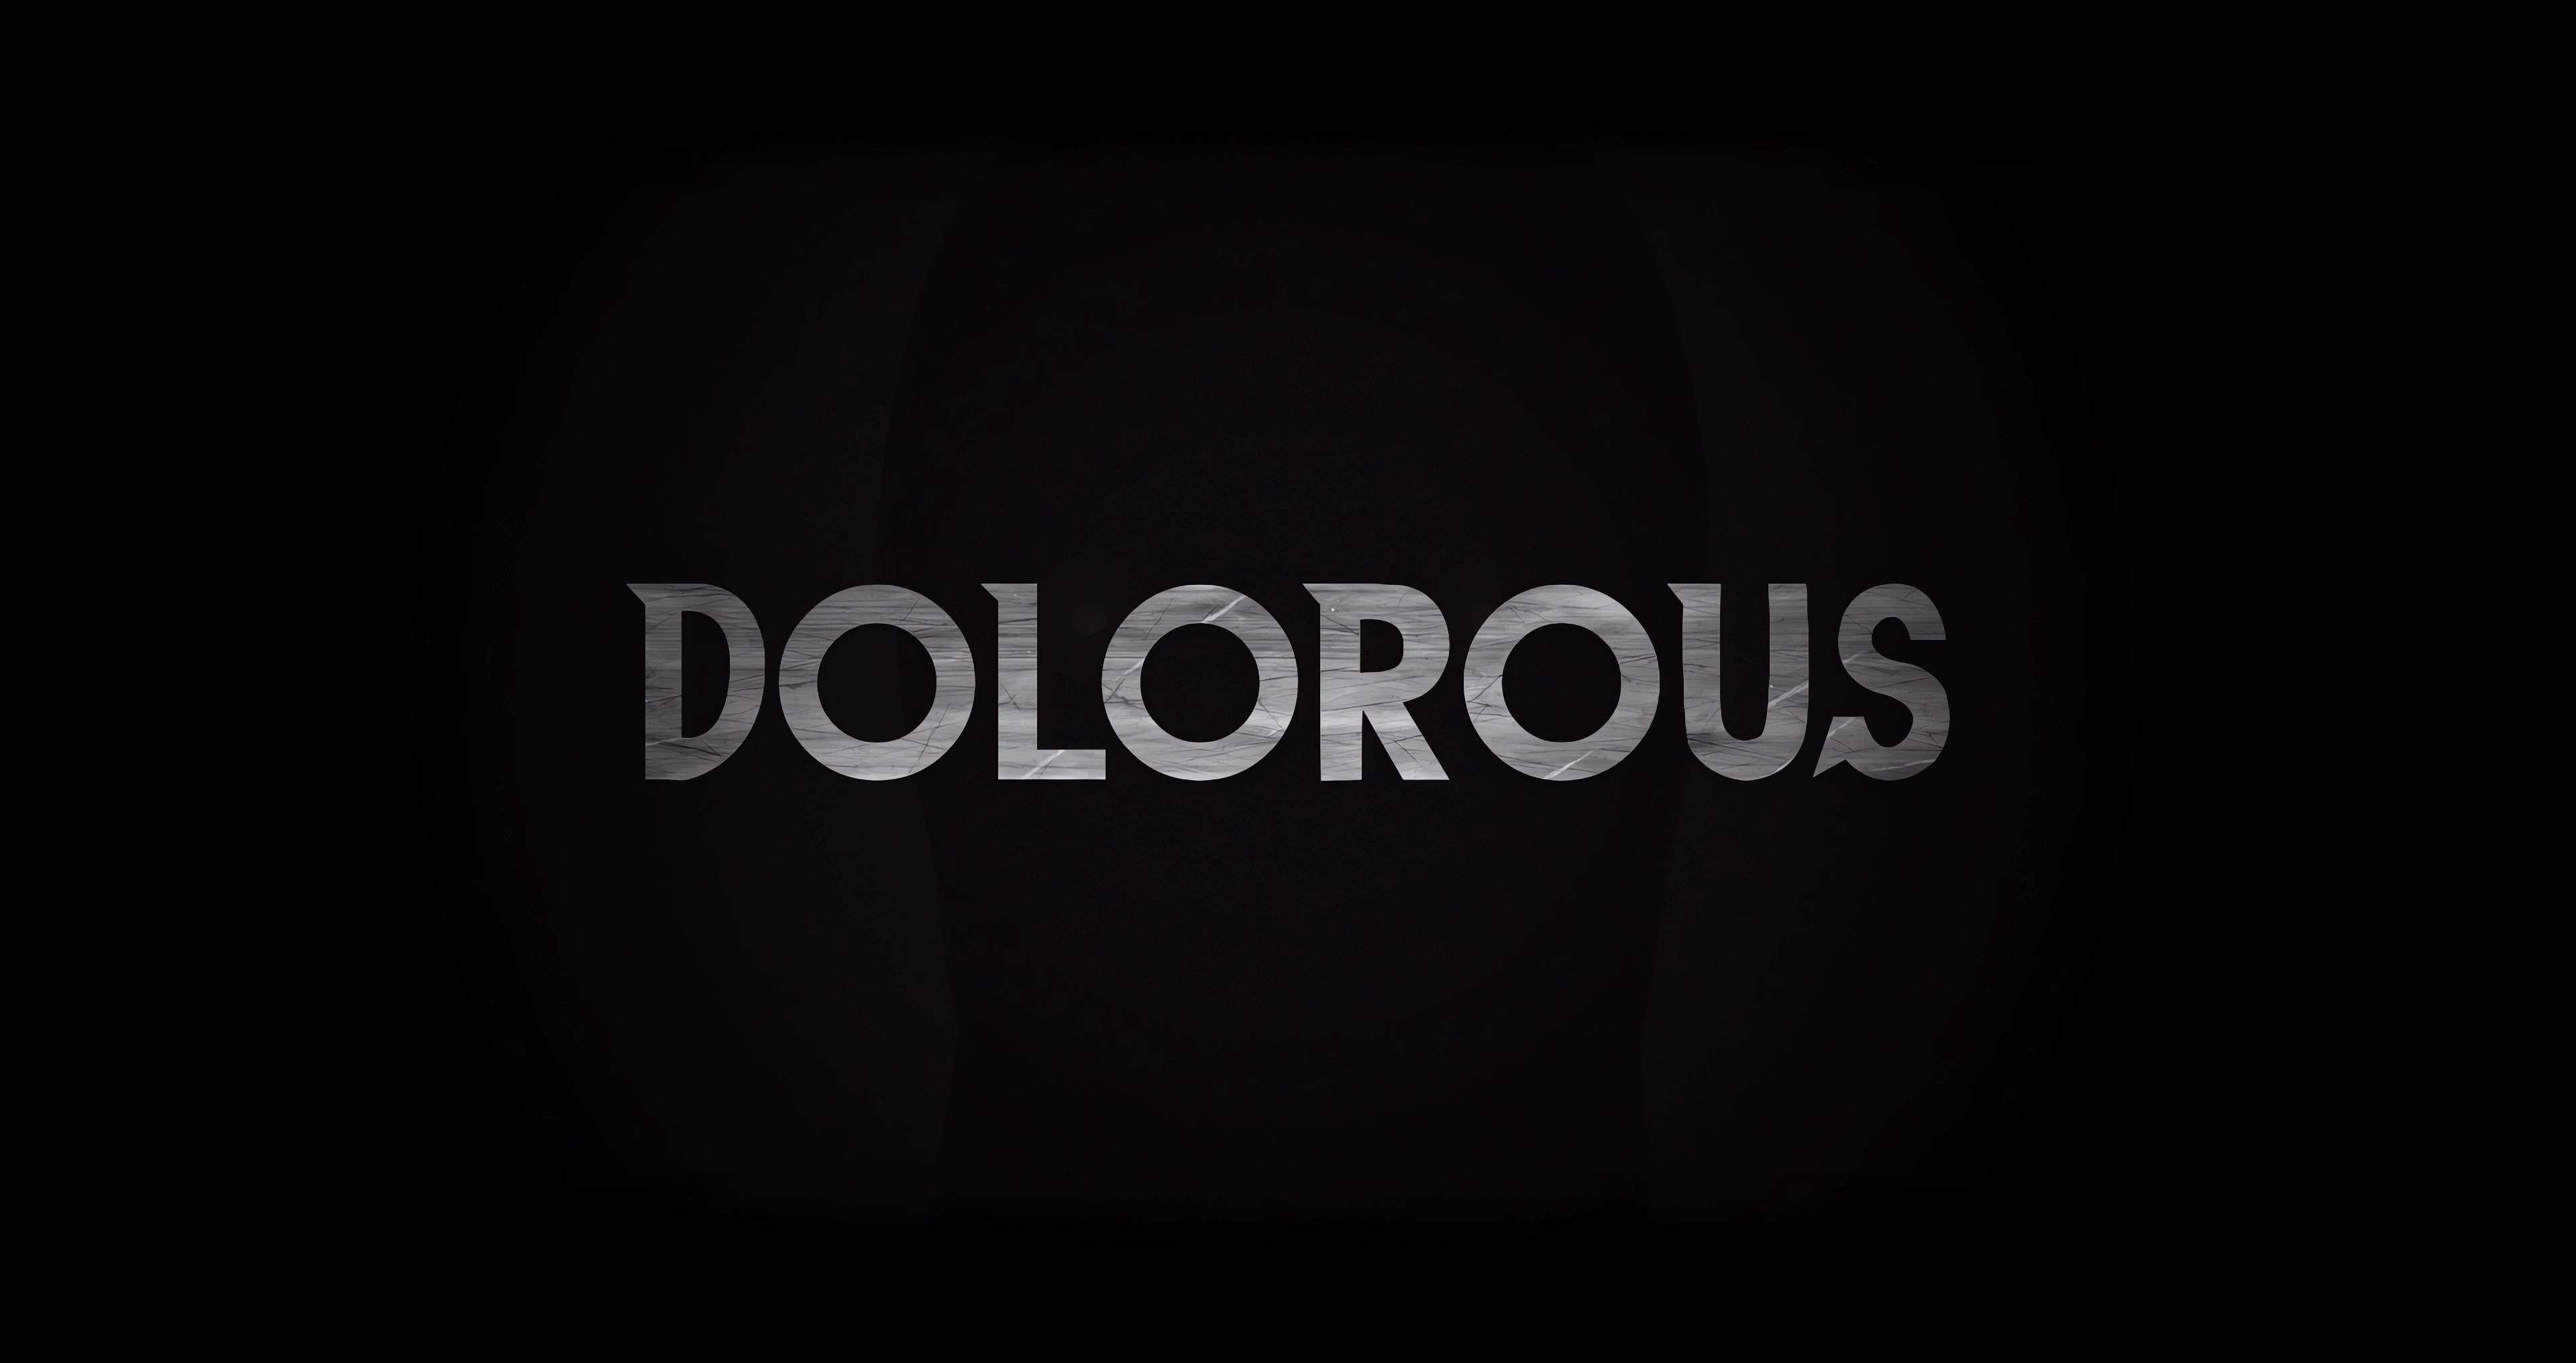 Dolorous